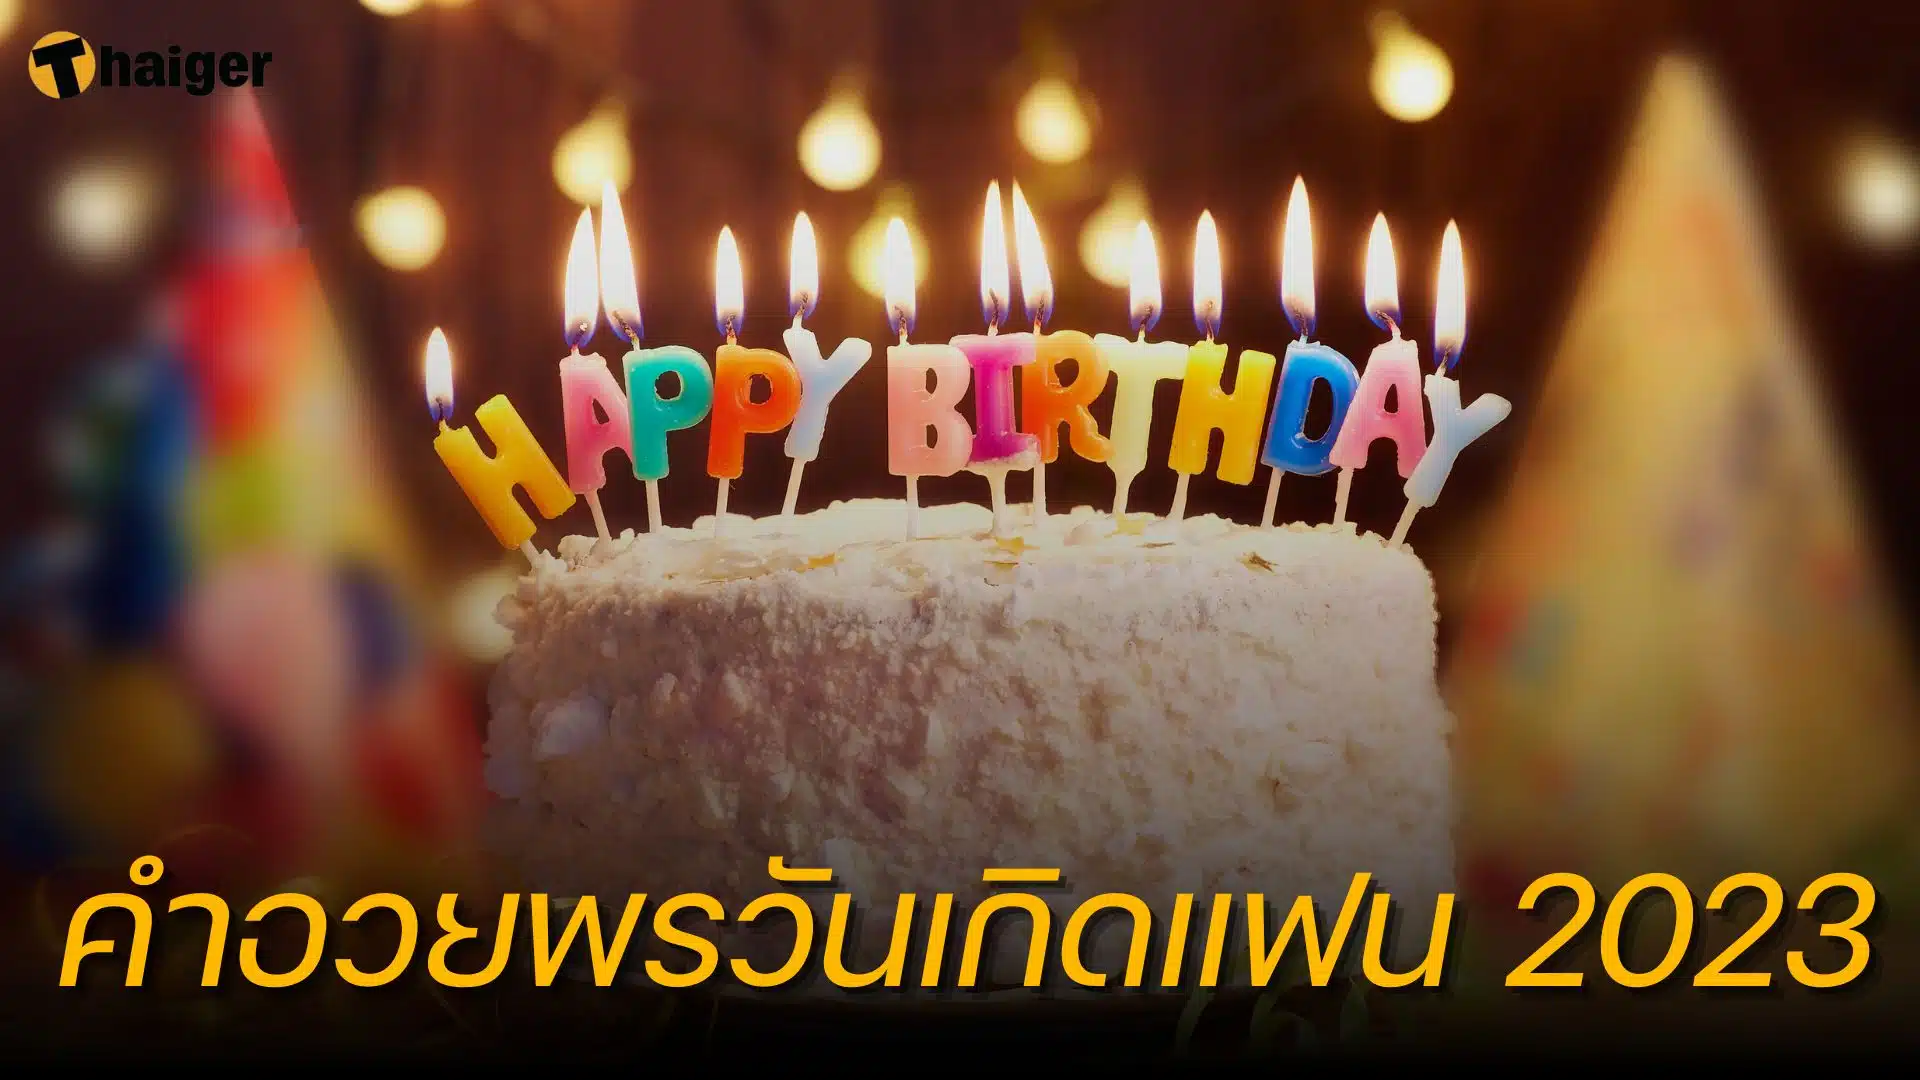 คำอวยพรวันเกิดแฟน ภาษาไทย-ภาษาอังกฤษ 2566 ความหมายน่ารัก | Thaiger ข่าวไทย